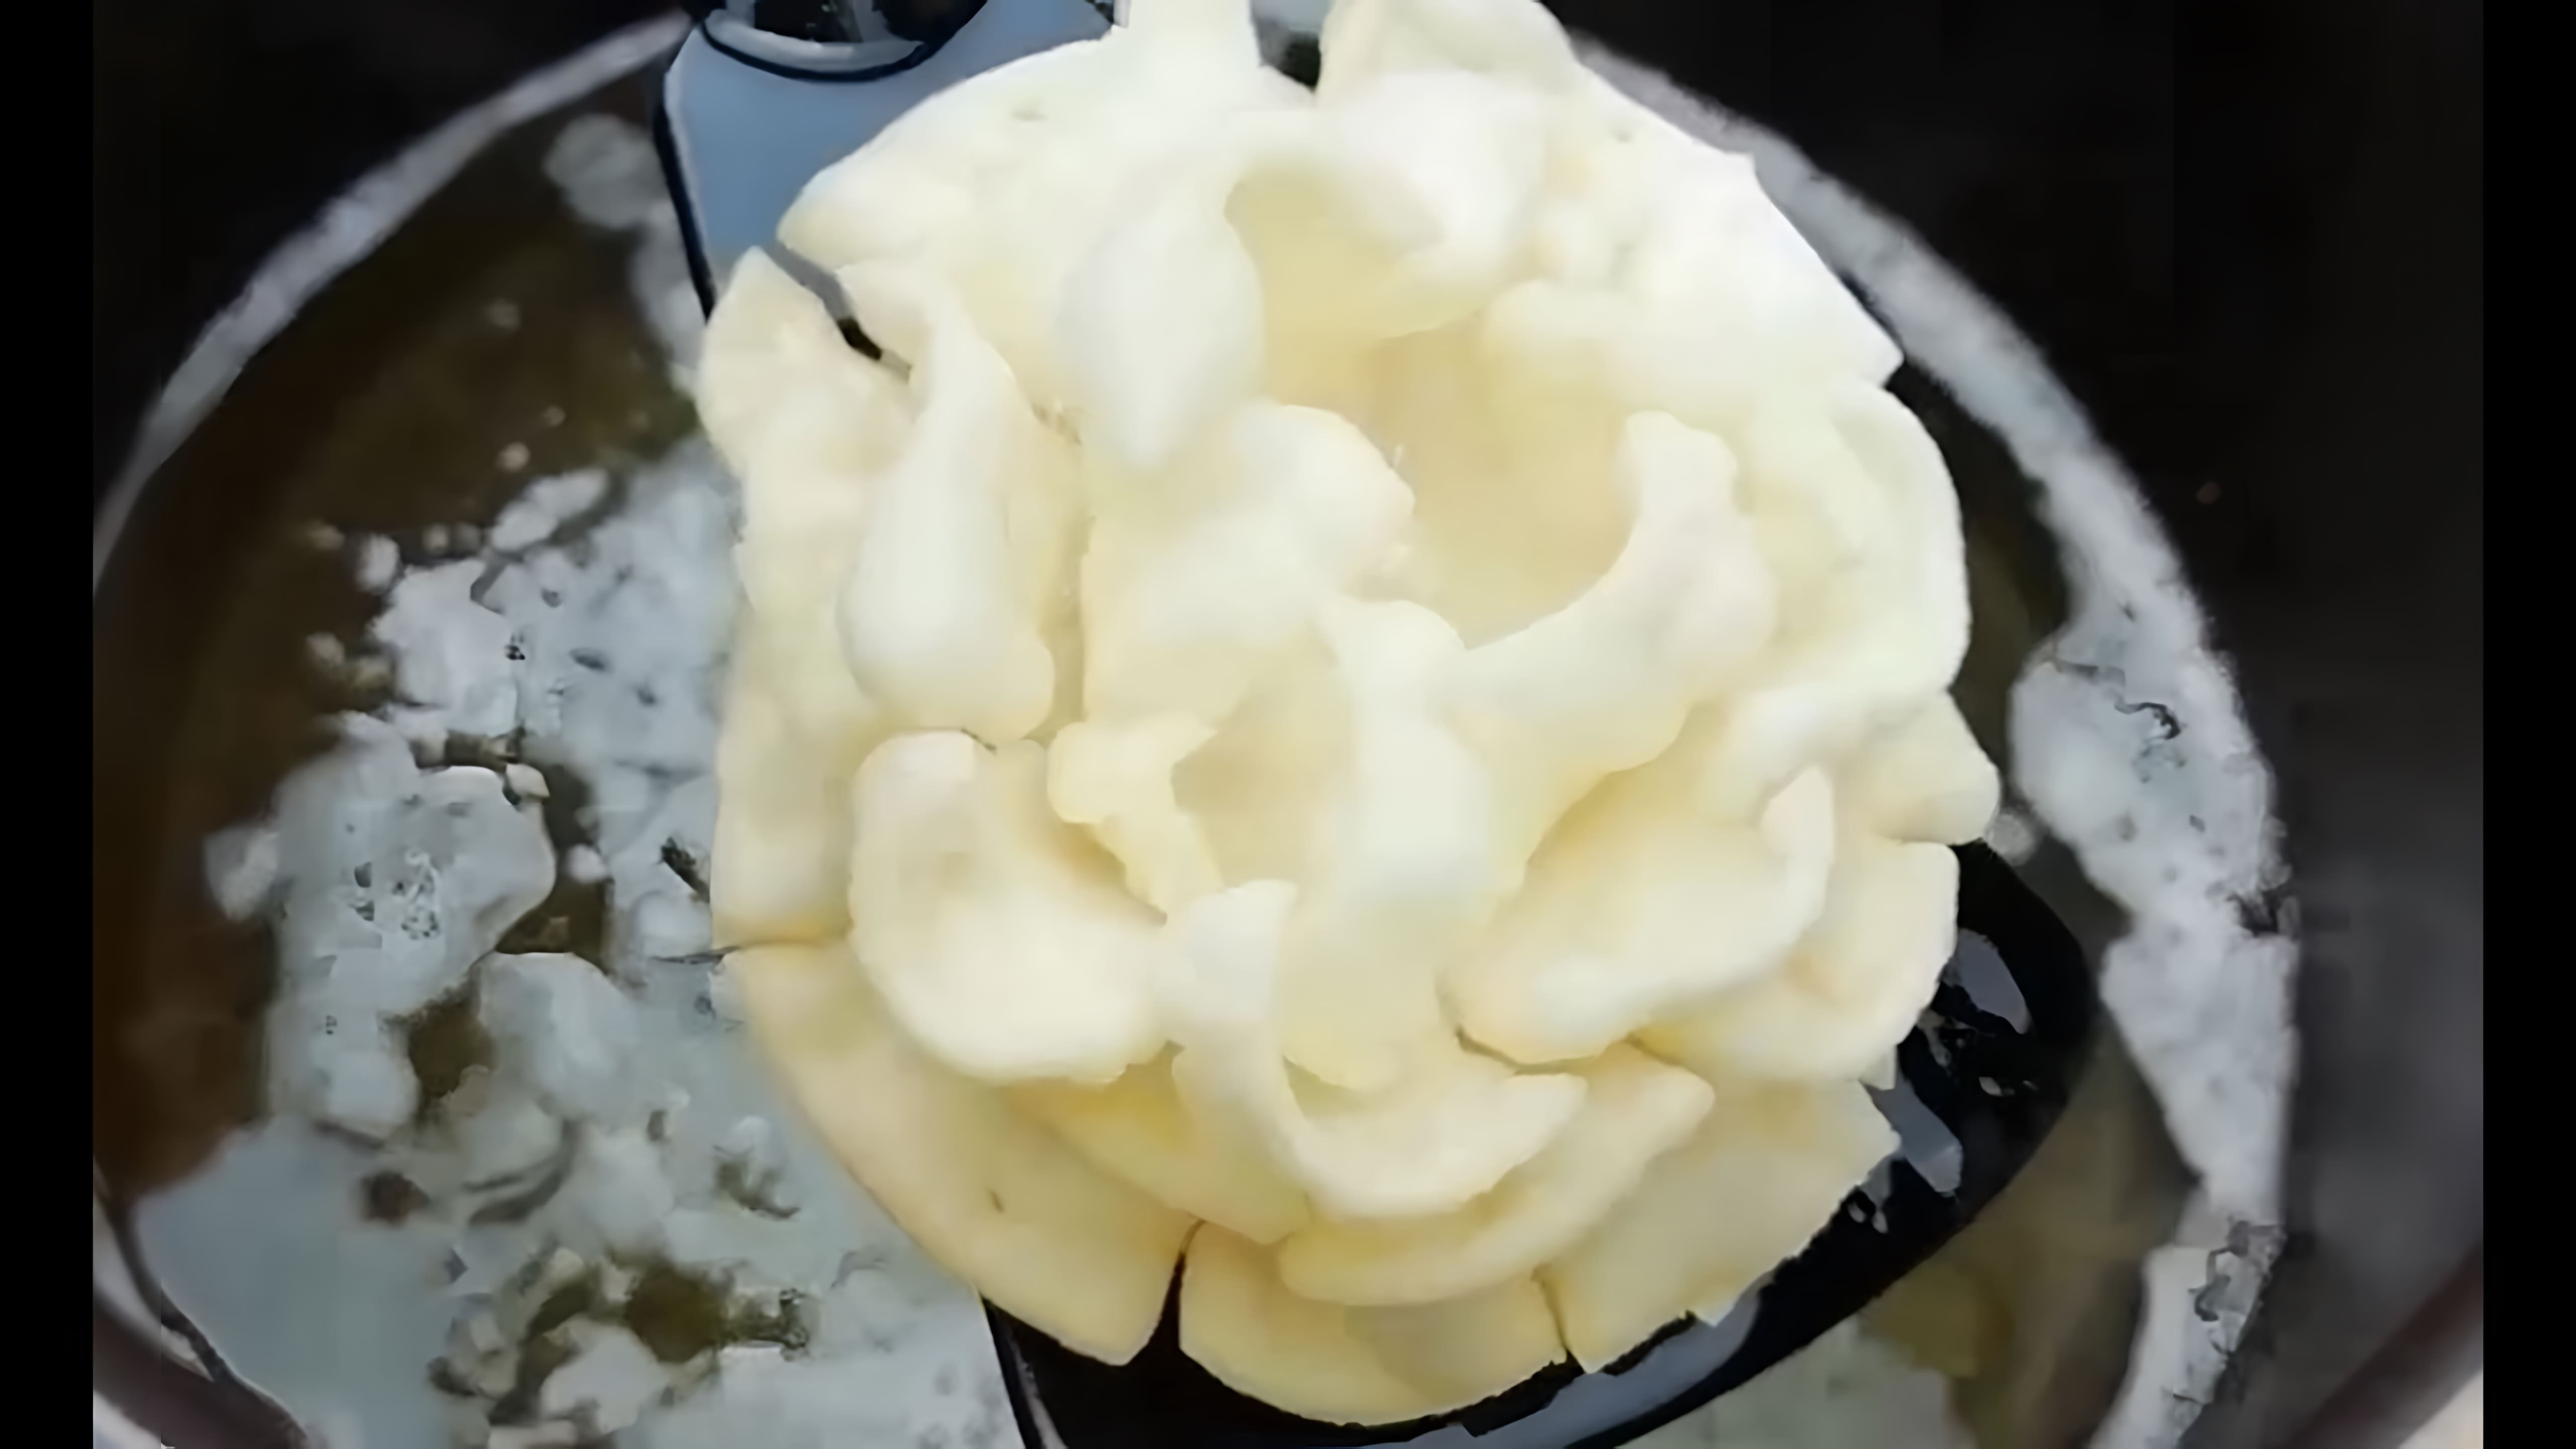 В этом видео демонстрируется рецепт приготовления хрустящего хвороста, который называется "Розочки в масле"